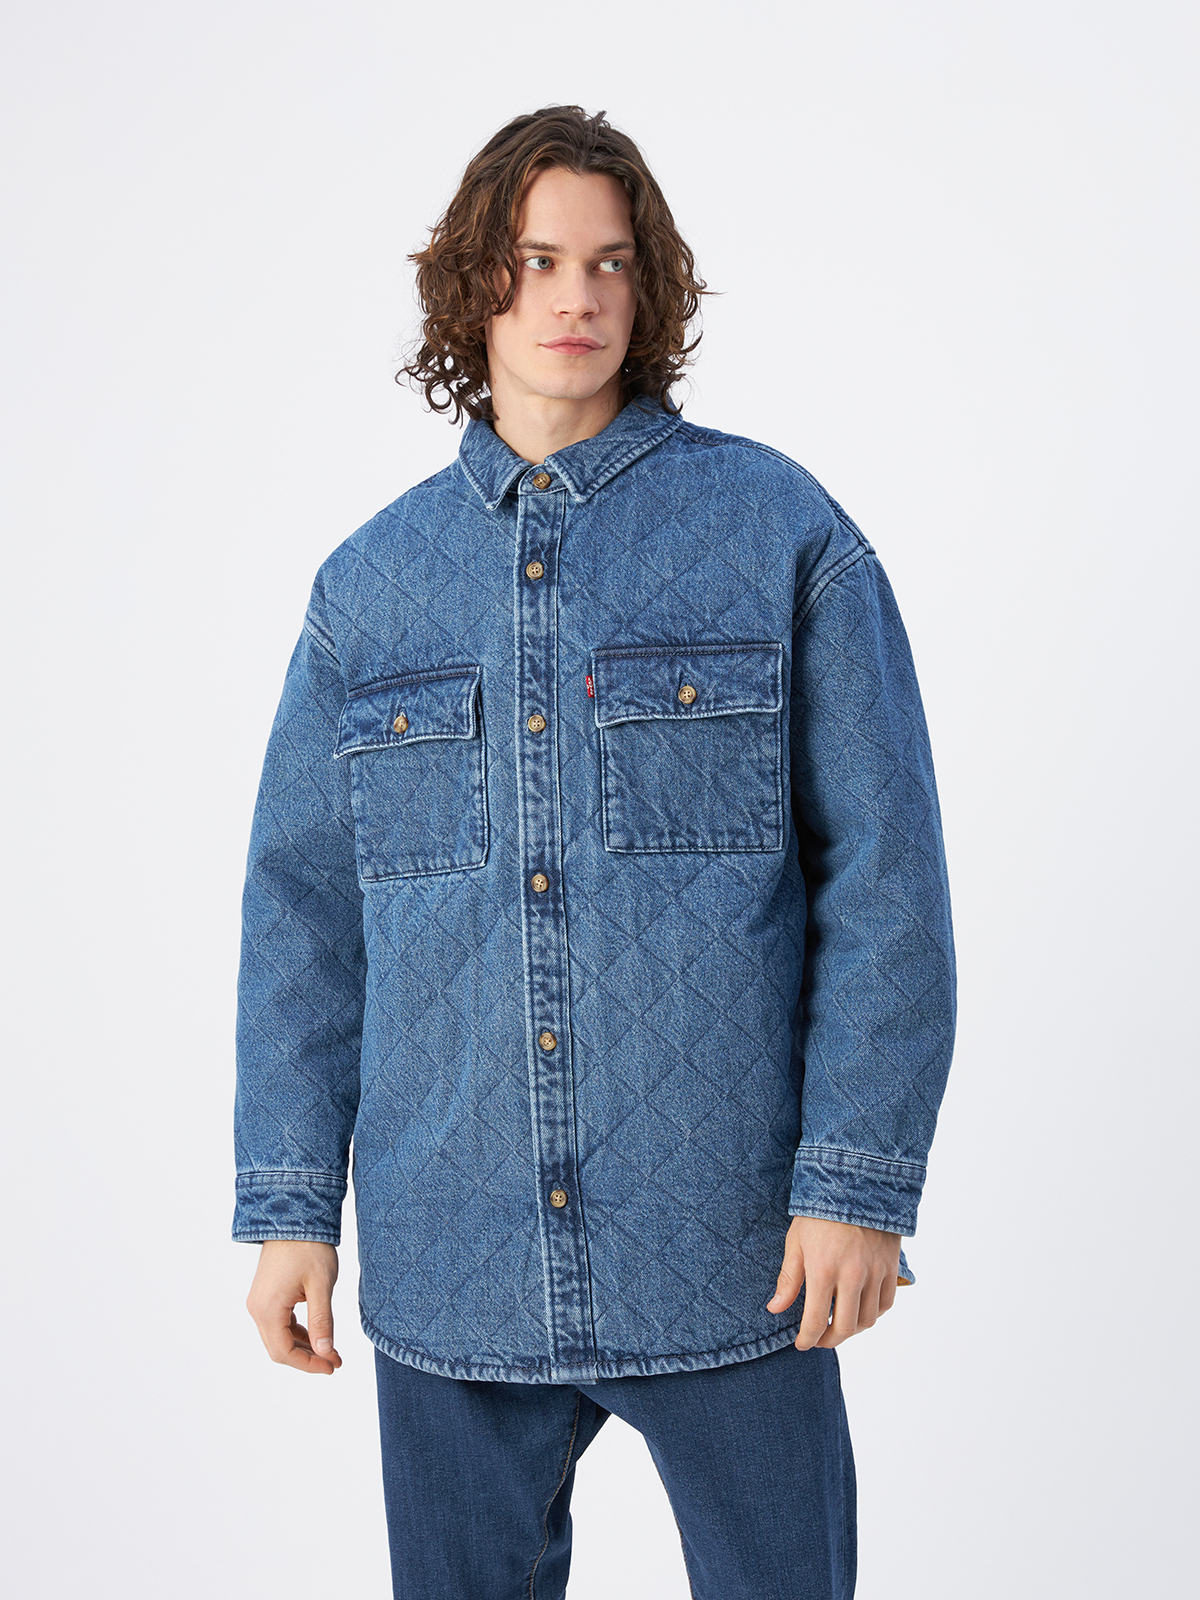 Джинсовая куртка мужская Levi's A0682-0001 синяя S